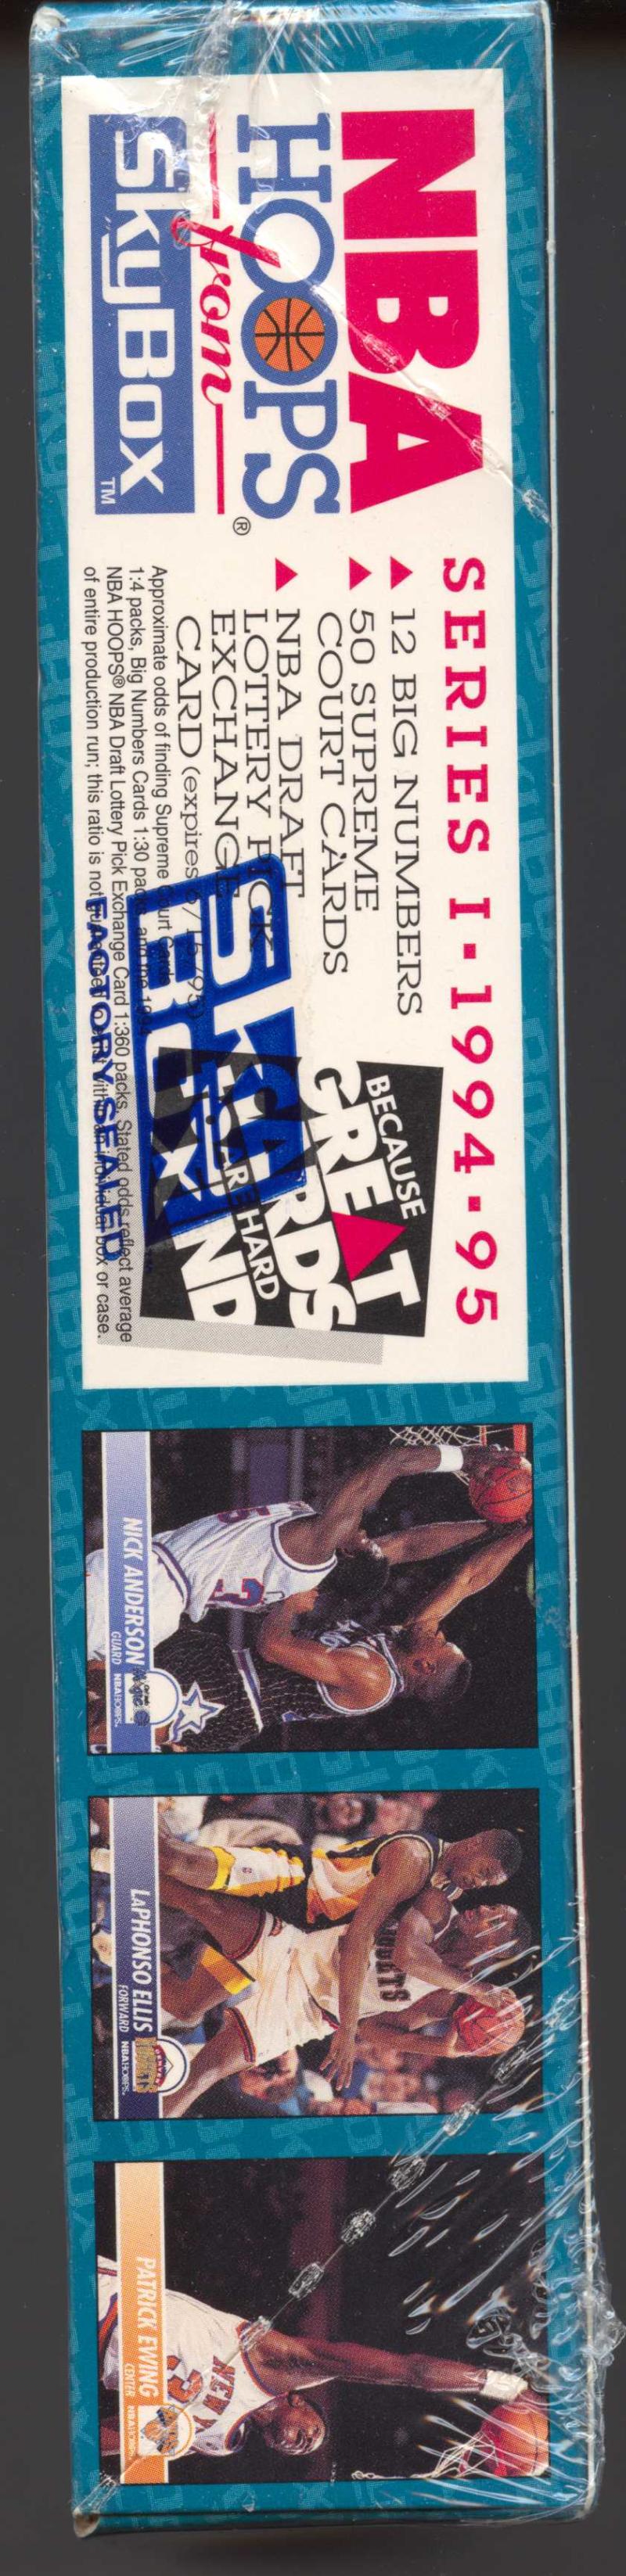 1994-95 SkyBox Hoops Series 1  Basketball Box Image 2